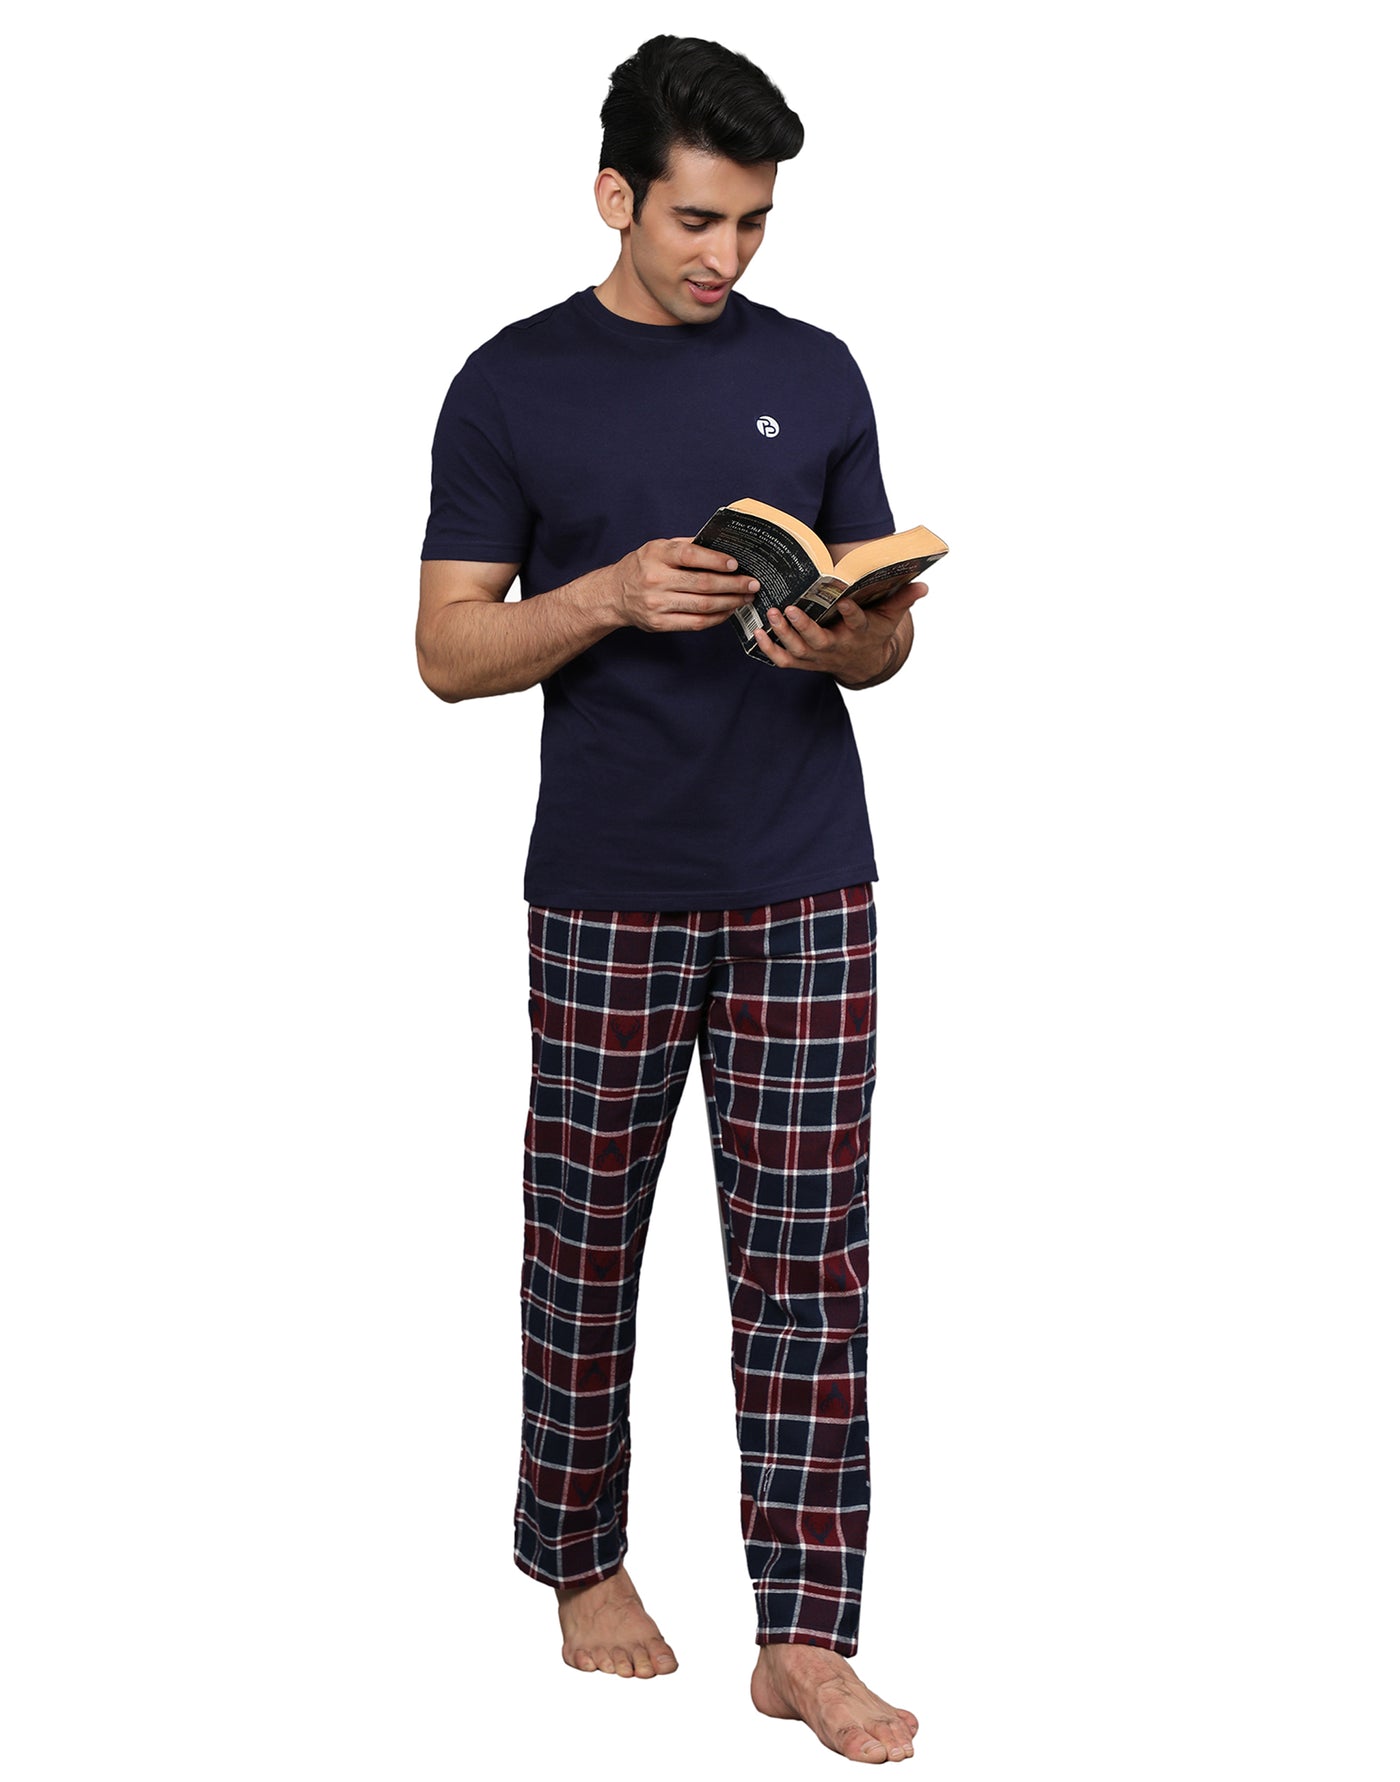 Pyjama Set for Men-Navy Deer Print